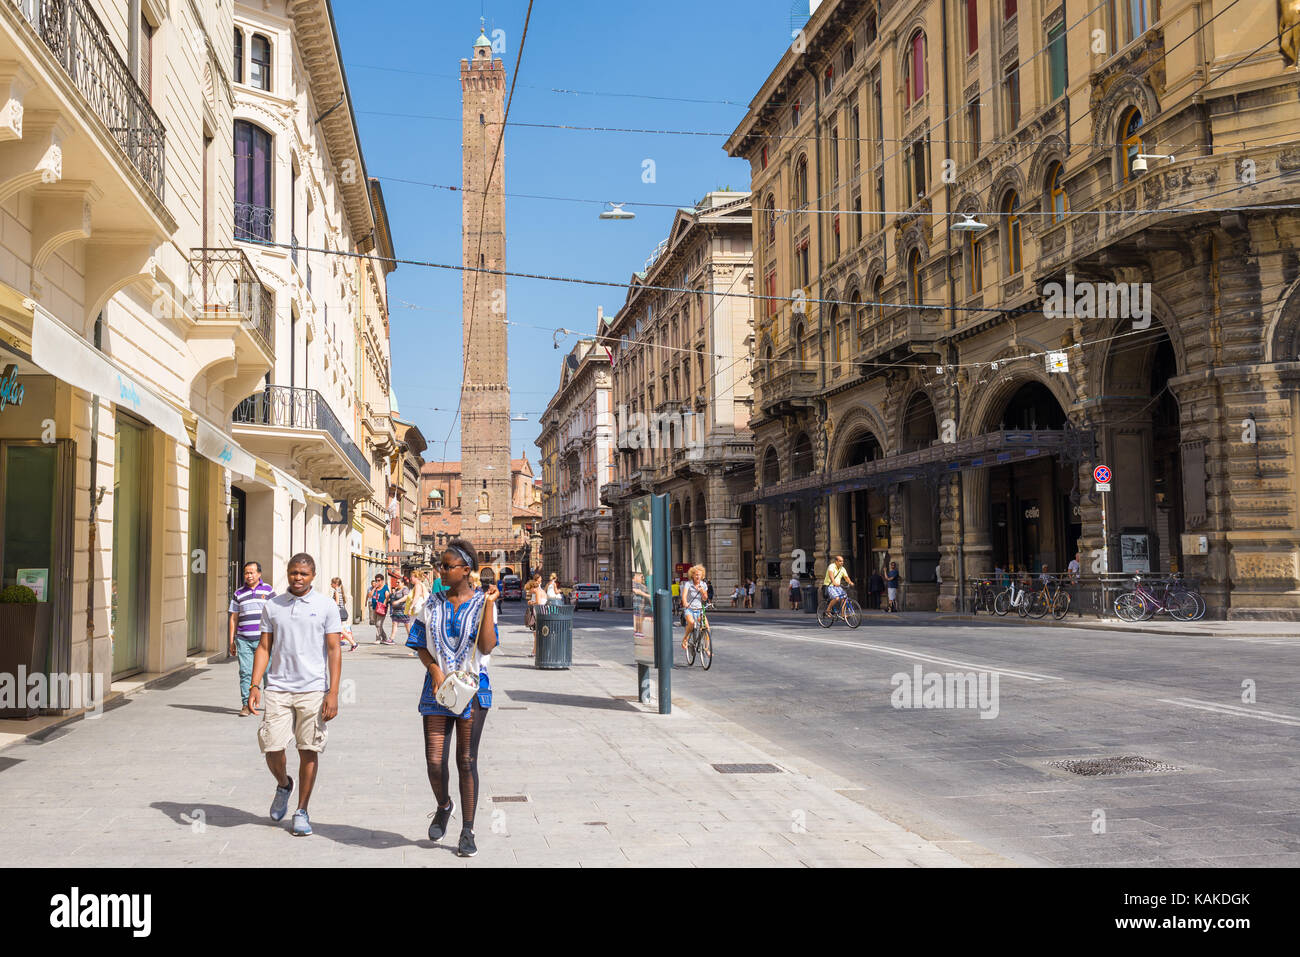 Les touristes se promener dans la "via rizzoli' l'une des rue principale dans le centre historique de Bologne ville avec vue sur la tour asinelli. emilia-romagna reg Banque D'Images